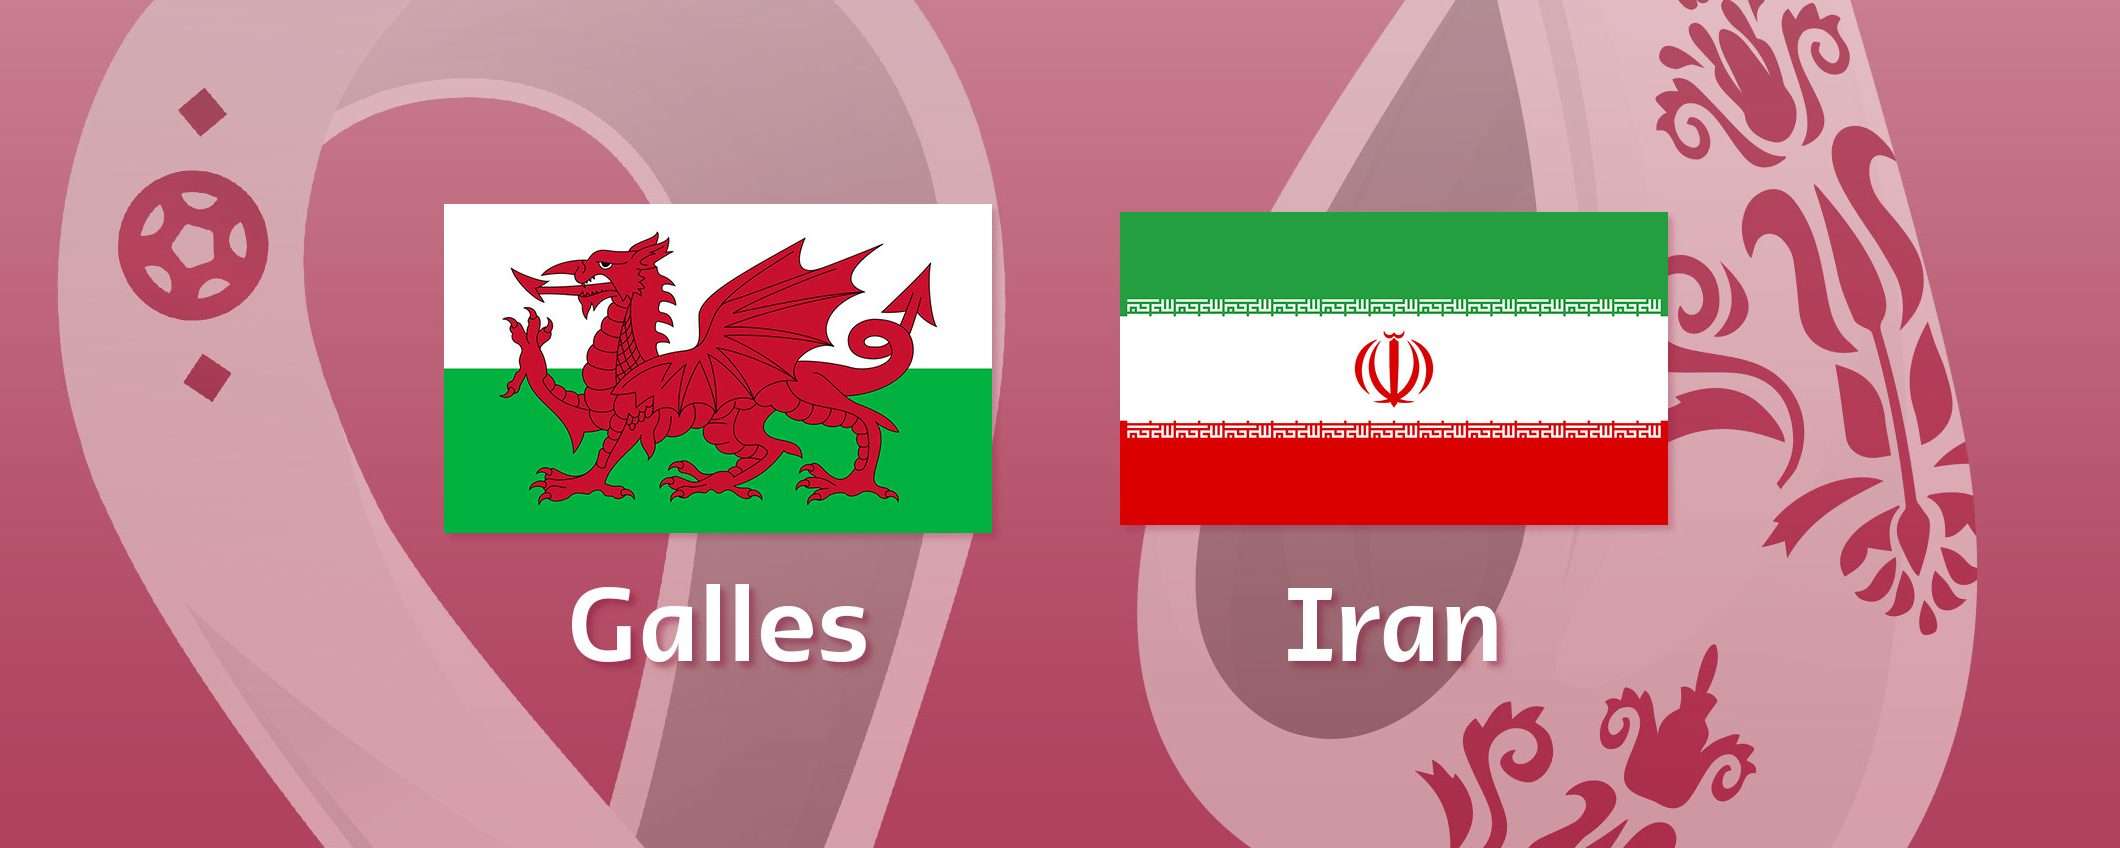 Come vedere Galles-Iran in streaming (Mondiali)